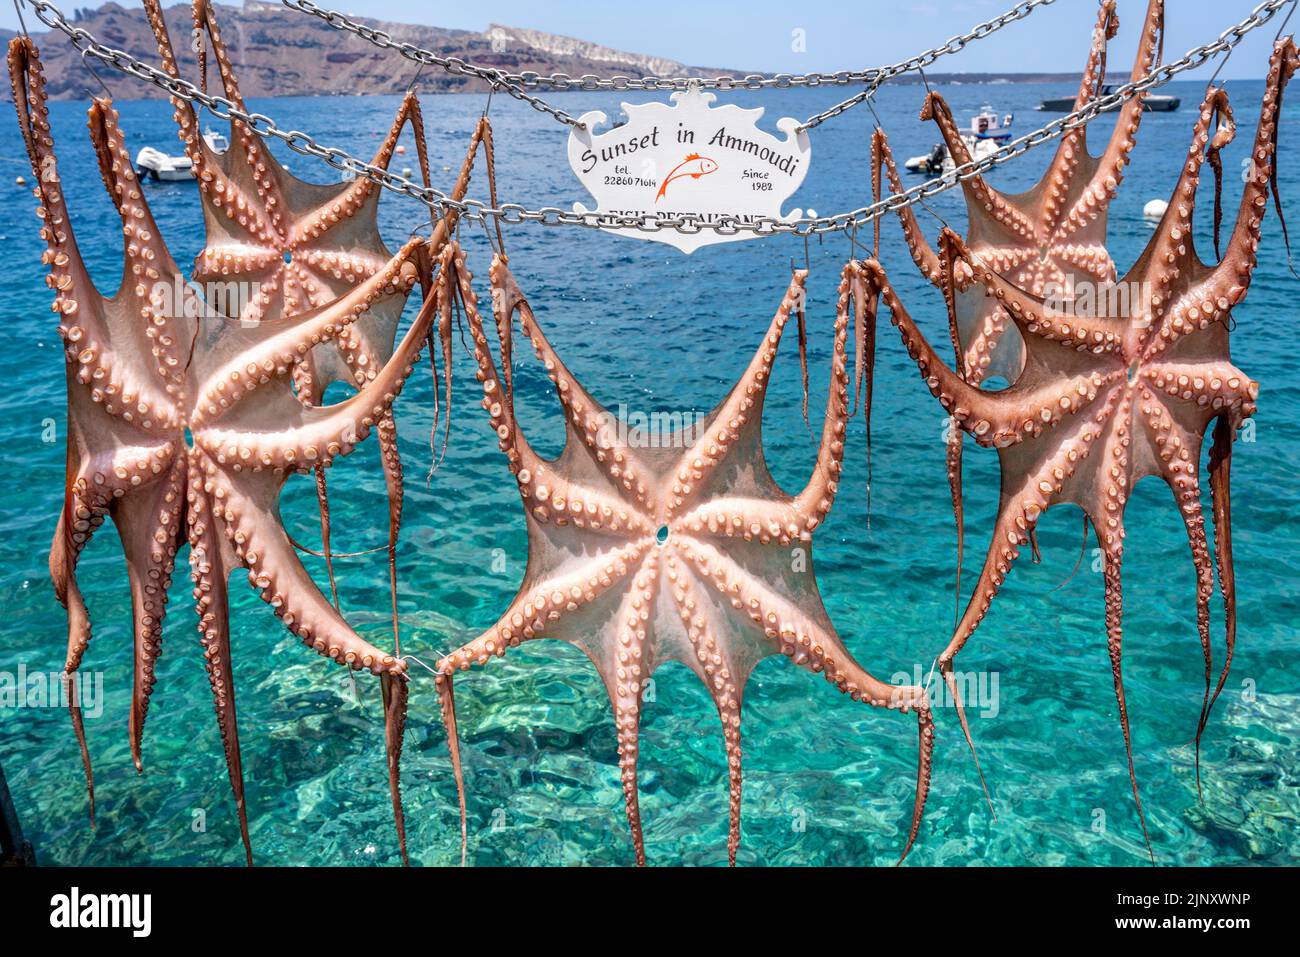 Tintenfisch/Tintenfisch, der vor einem Restaurant in Ammoudi Bay, Oia, Santorini, griechische Inseln, Griechenland zum Trocknen aufgehängt wird. Stockfoto